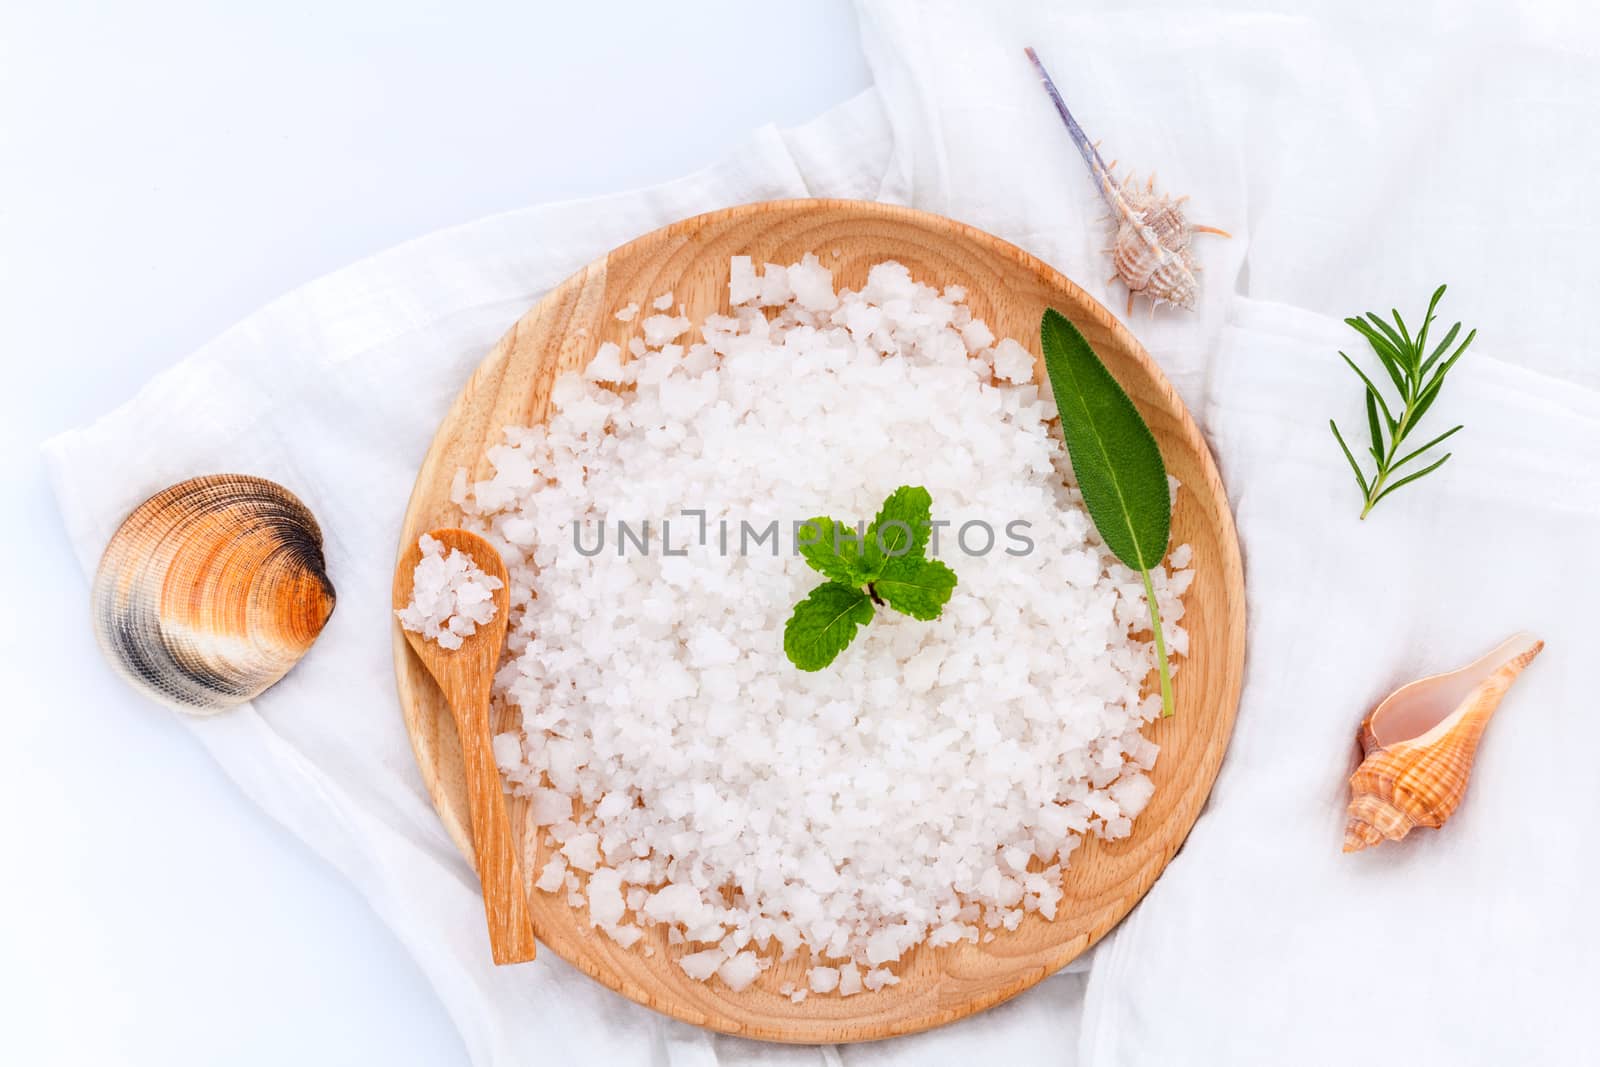  Sea salt natural spa ingredients ,herbs and sea shells for scru by kerdkanno